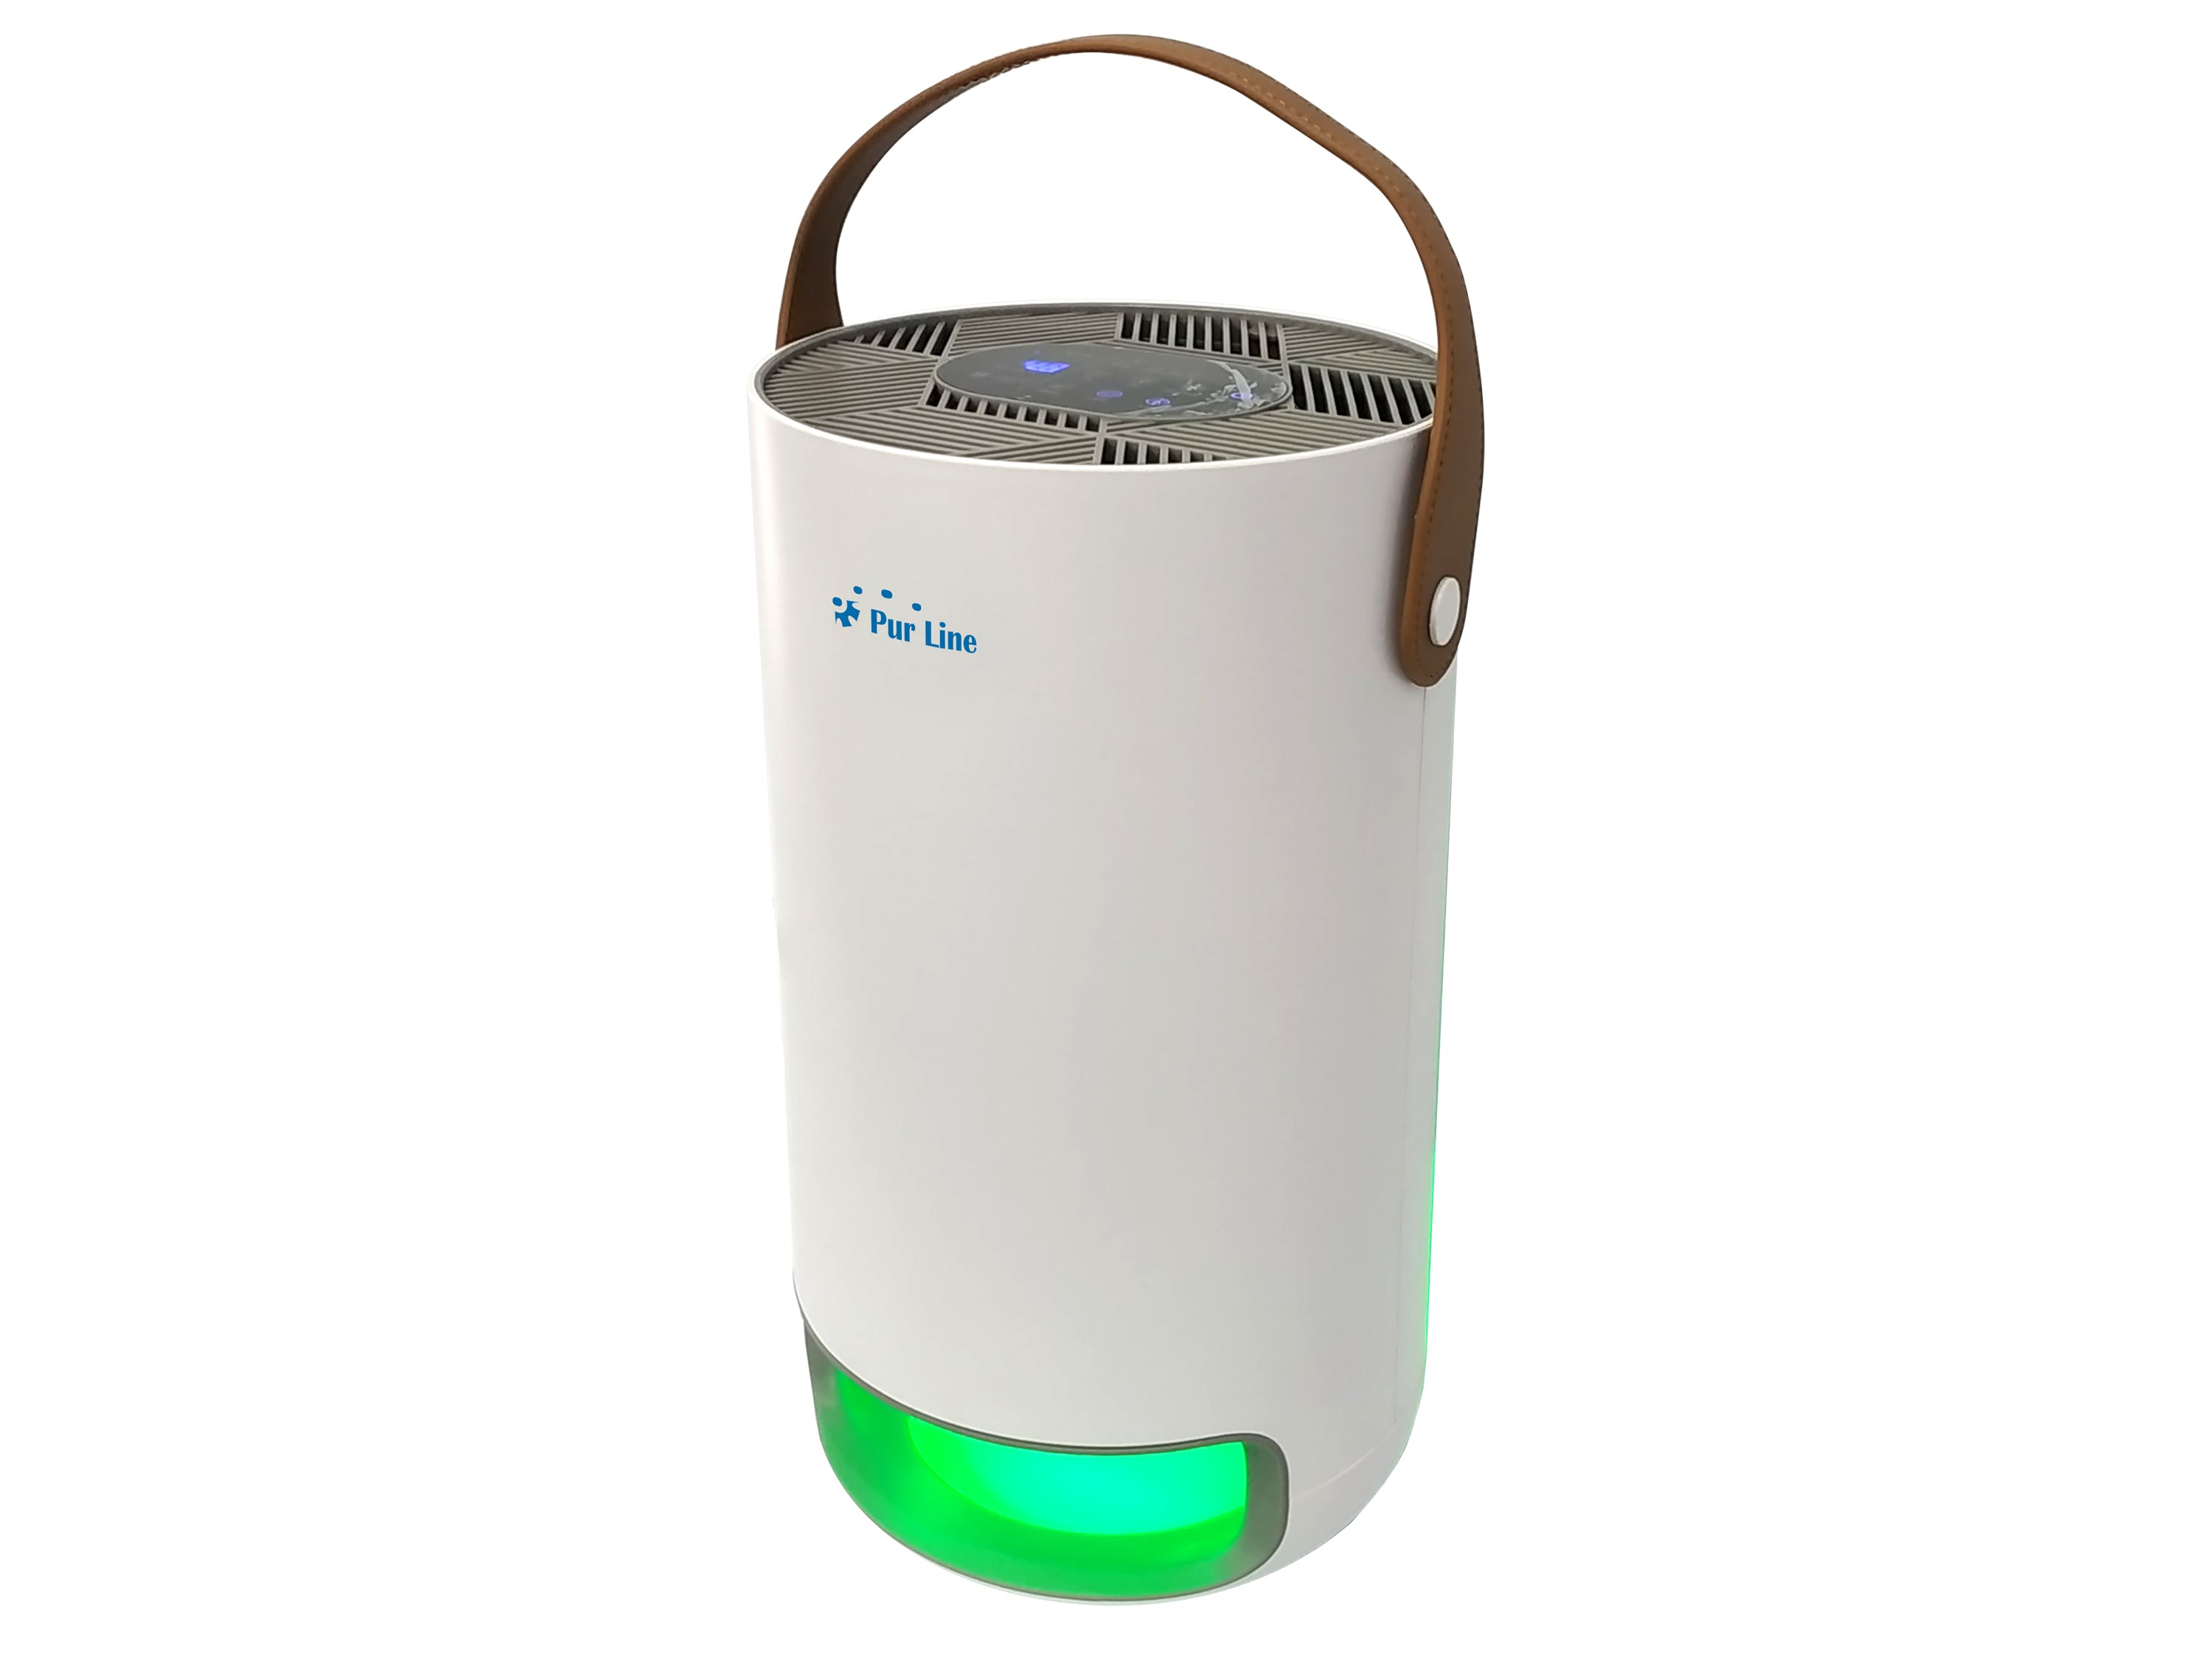 Advanced Pure Air Purificateur d'air avec filtre HEPA et